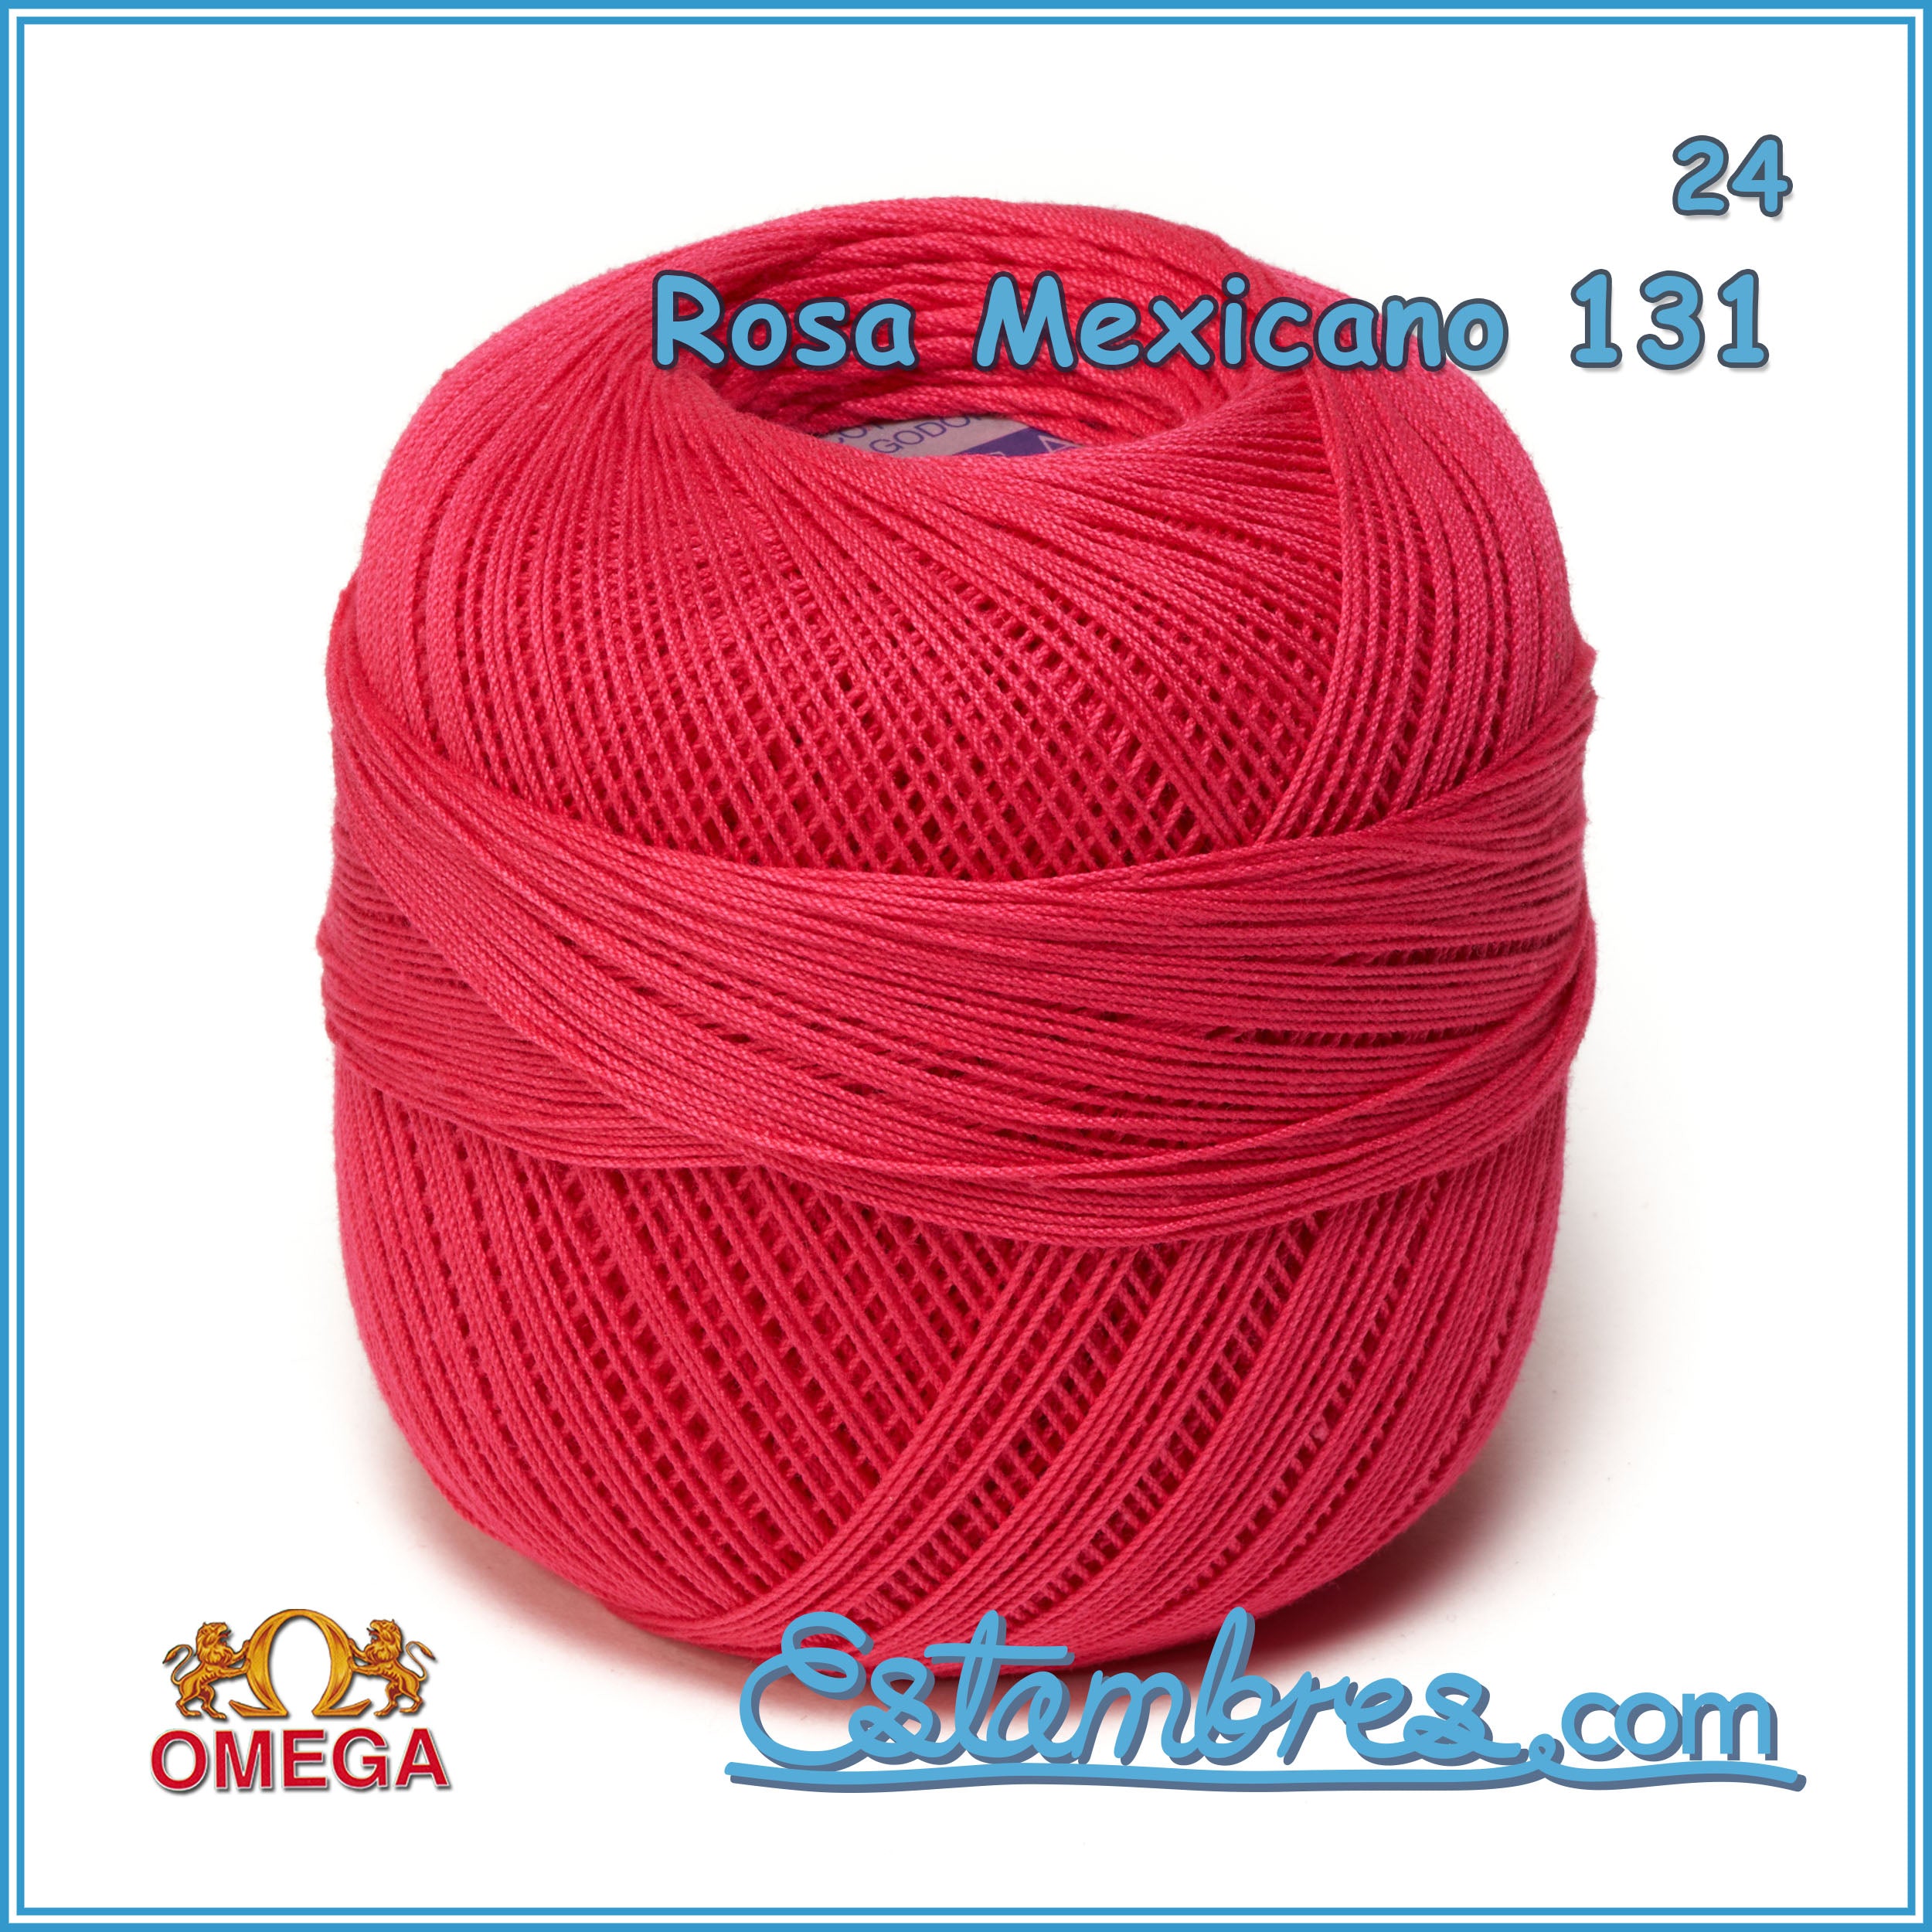 Hilo Crochet #10 color Beige Caja de 12 pzs